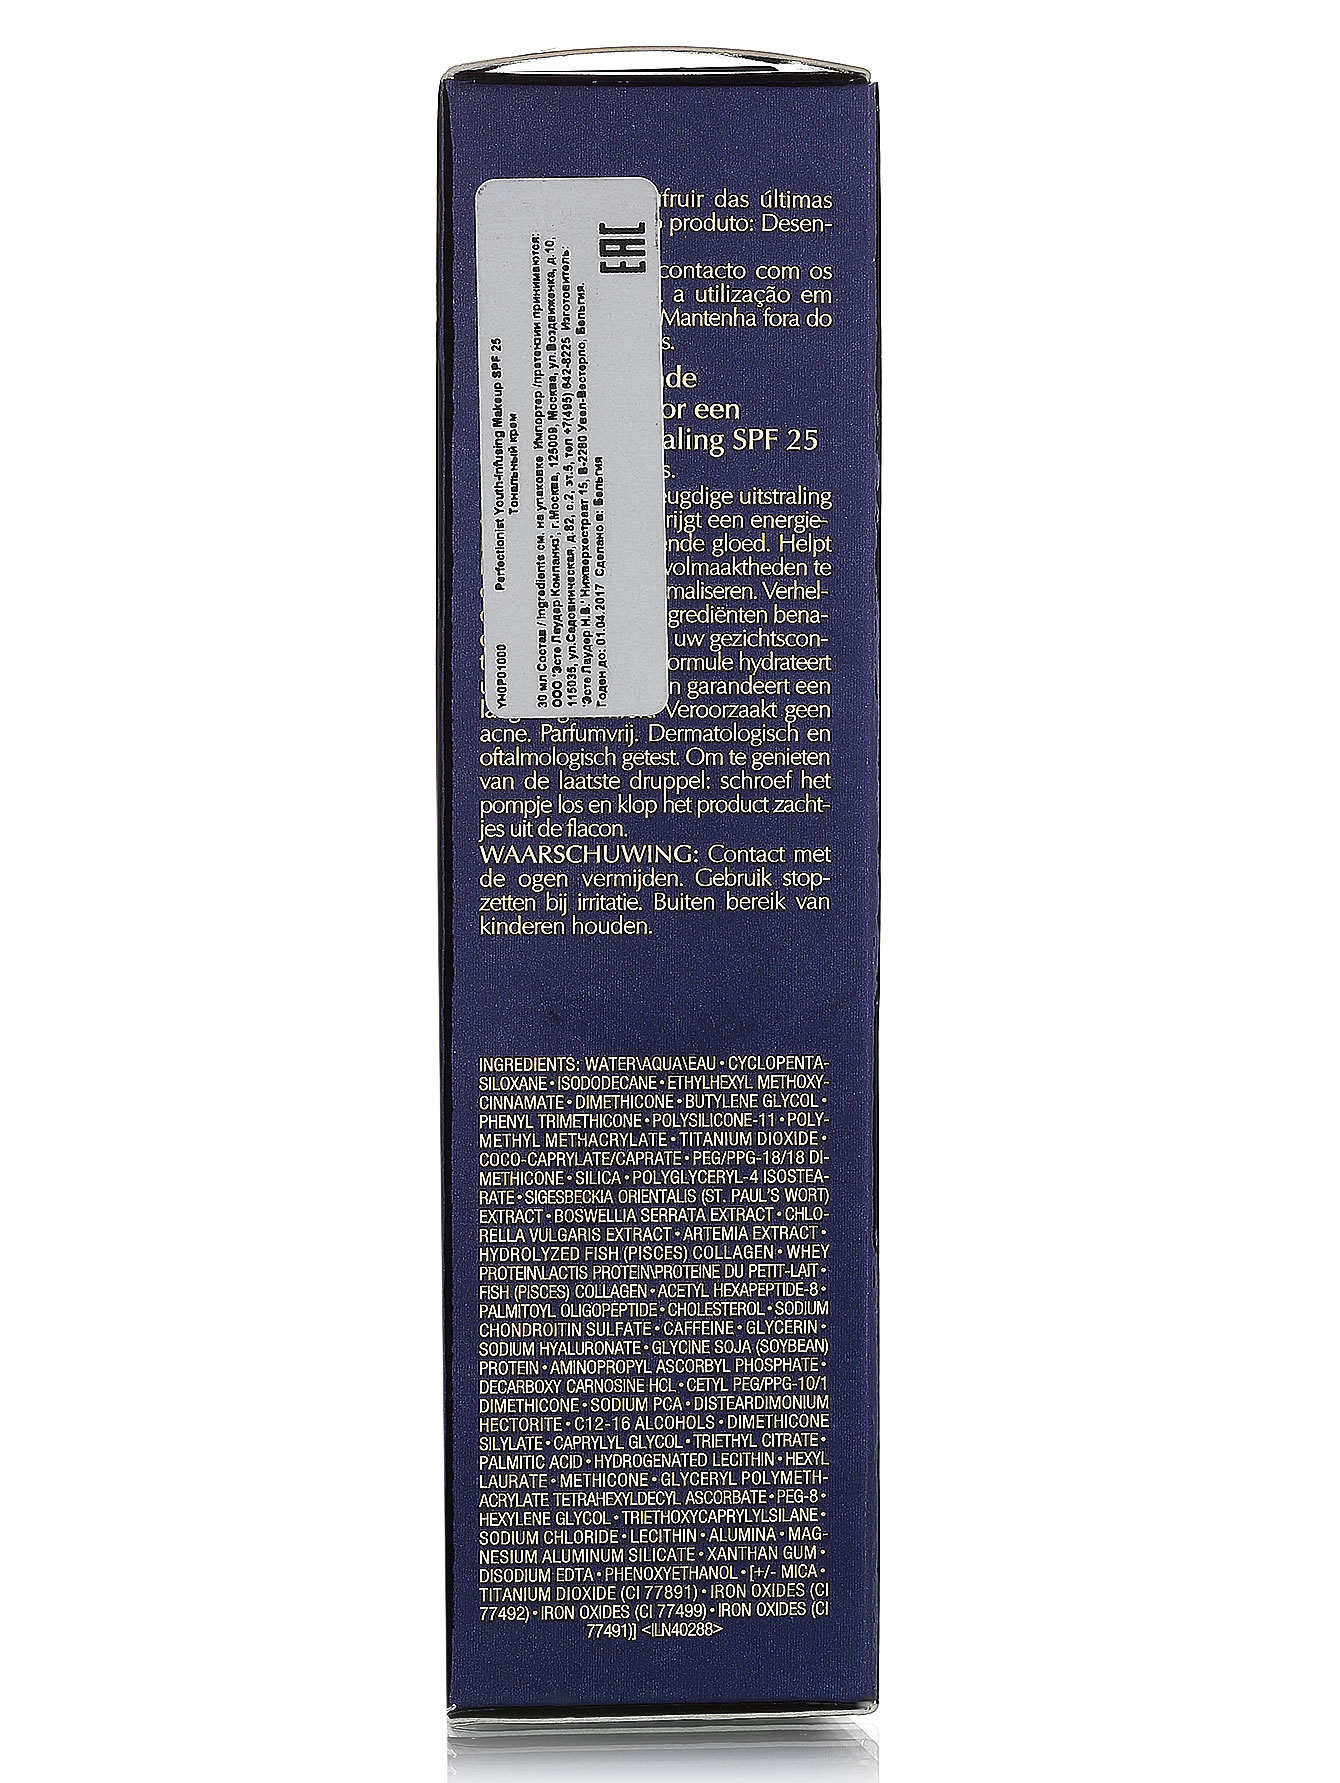  Антивозрастной тональный крем - 3N1 Ivory Beige, Perfectionist, 30ml - Модель Верх-Низ